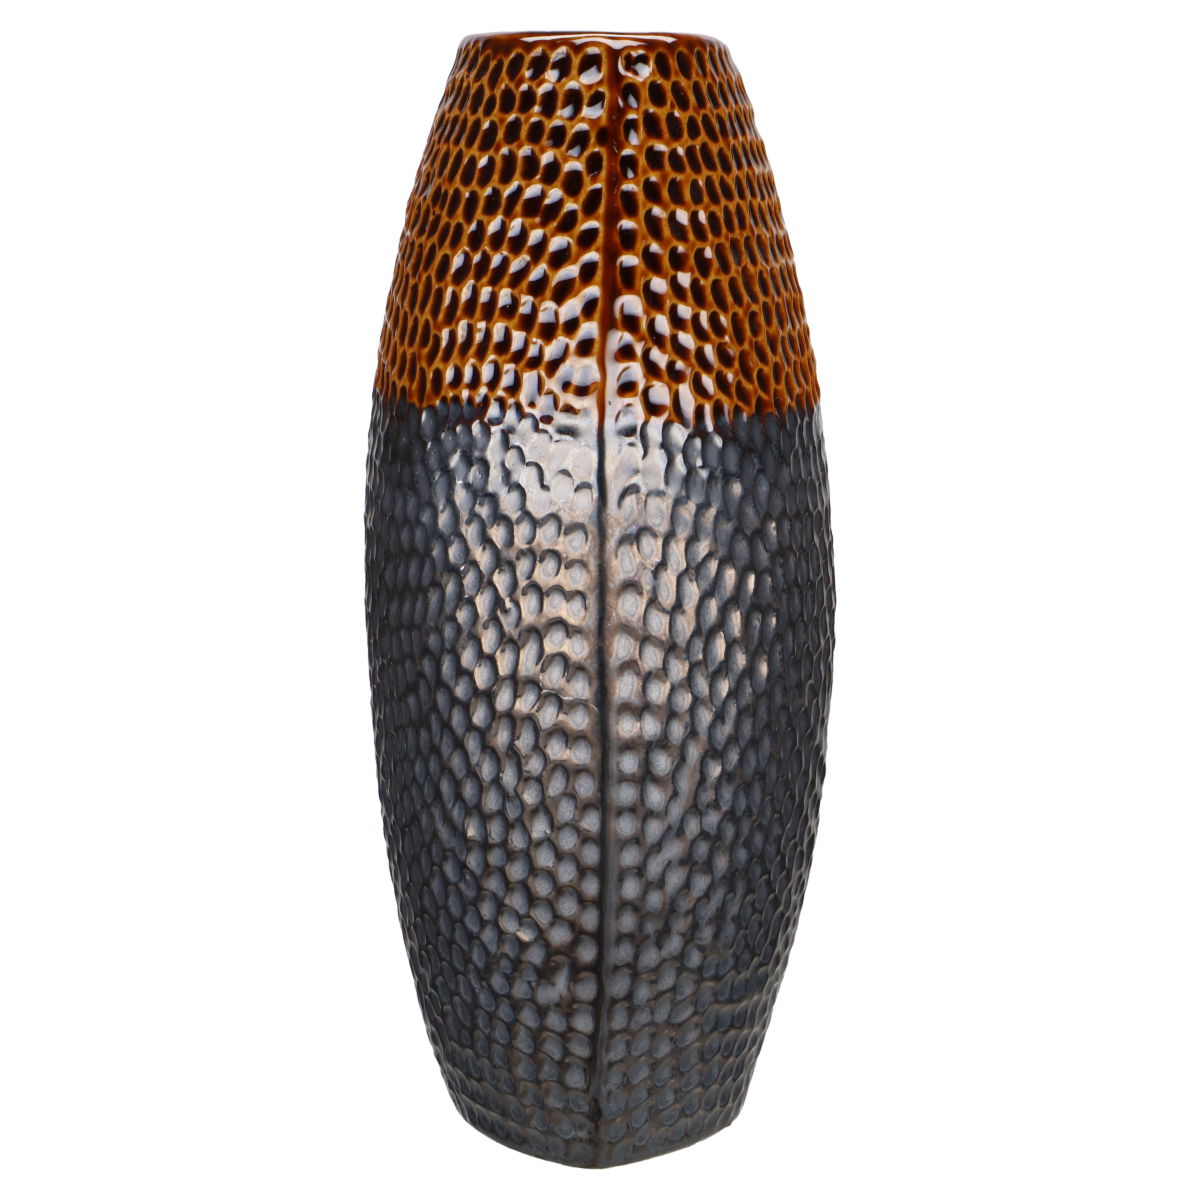 Vase Sambia mittelgroß braun glänzend